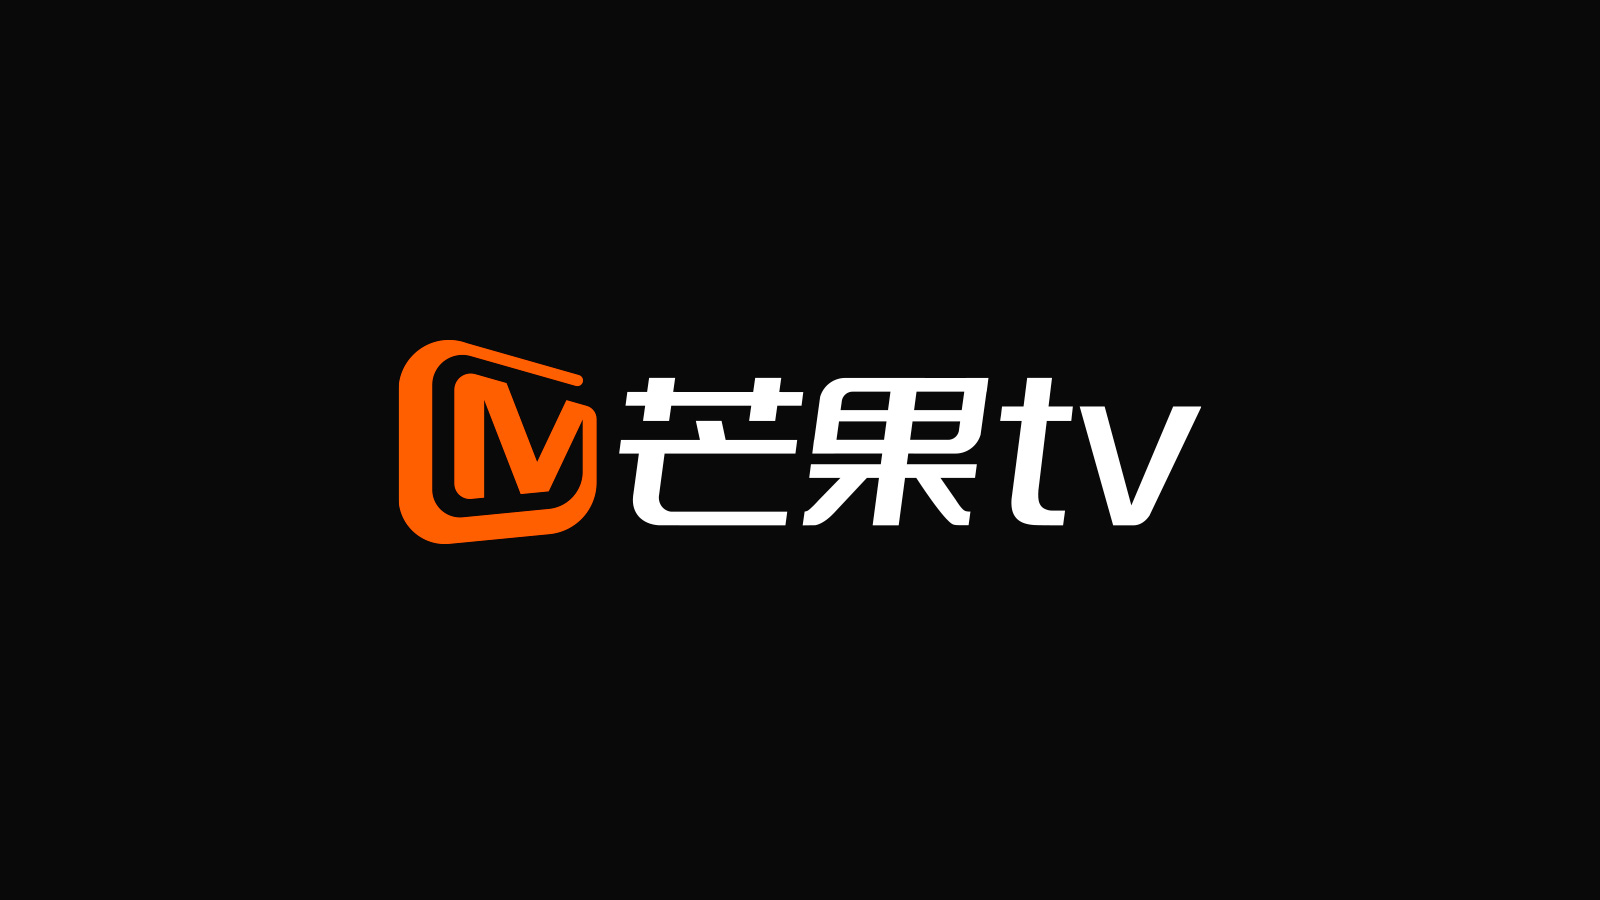 芒 果 TV(mgtv.com)LOGO 设 计. 进 入 王 小 困 设 计. 关 于 WKUN. 